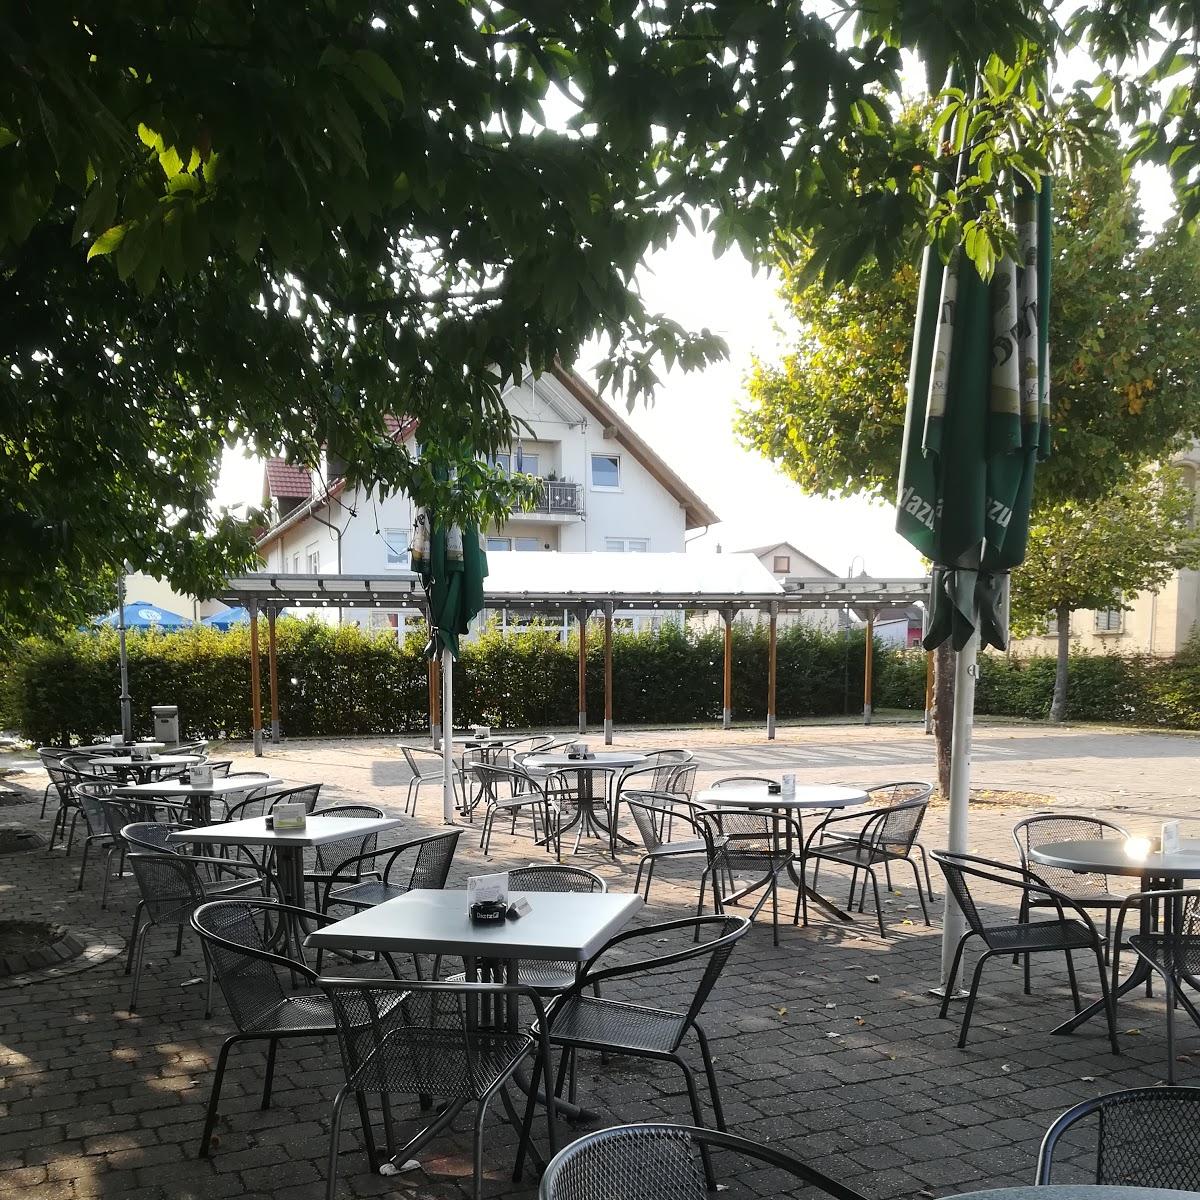 Restaurant "Bistro Café Chaplins" in Hambrücken